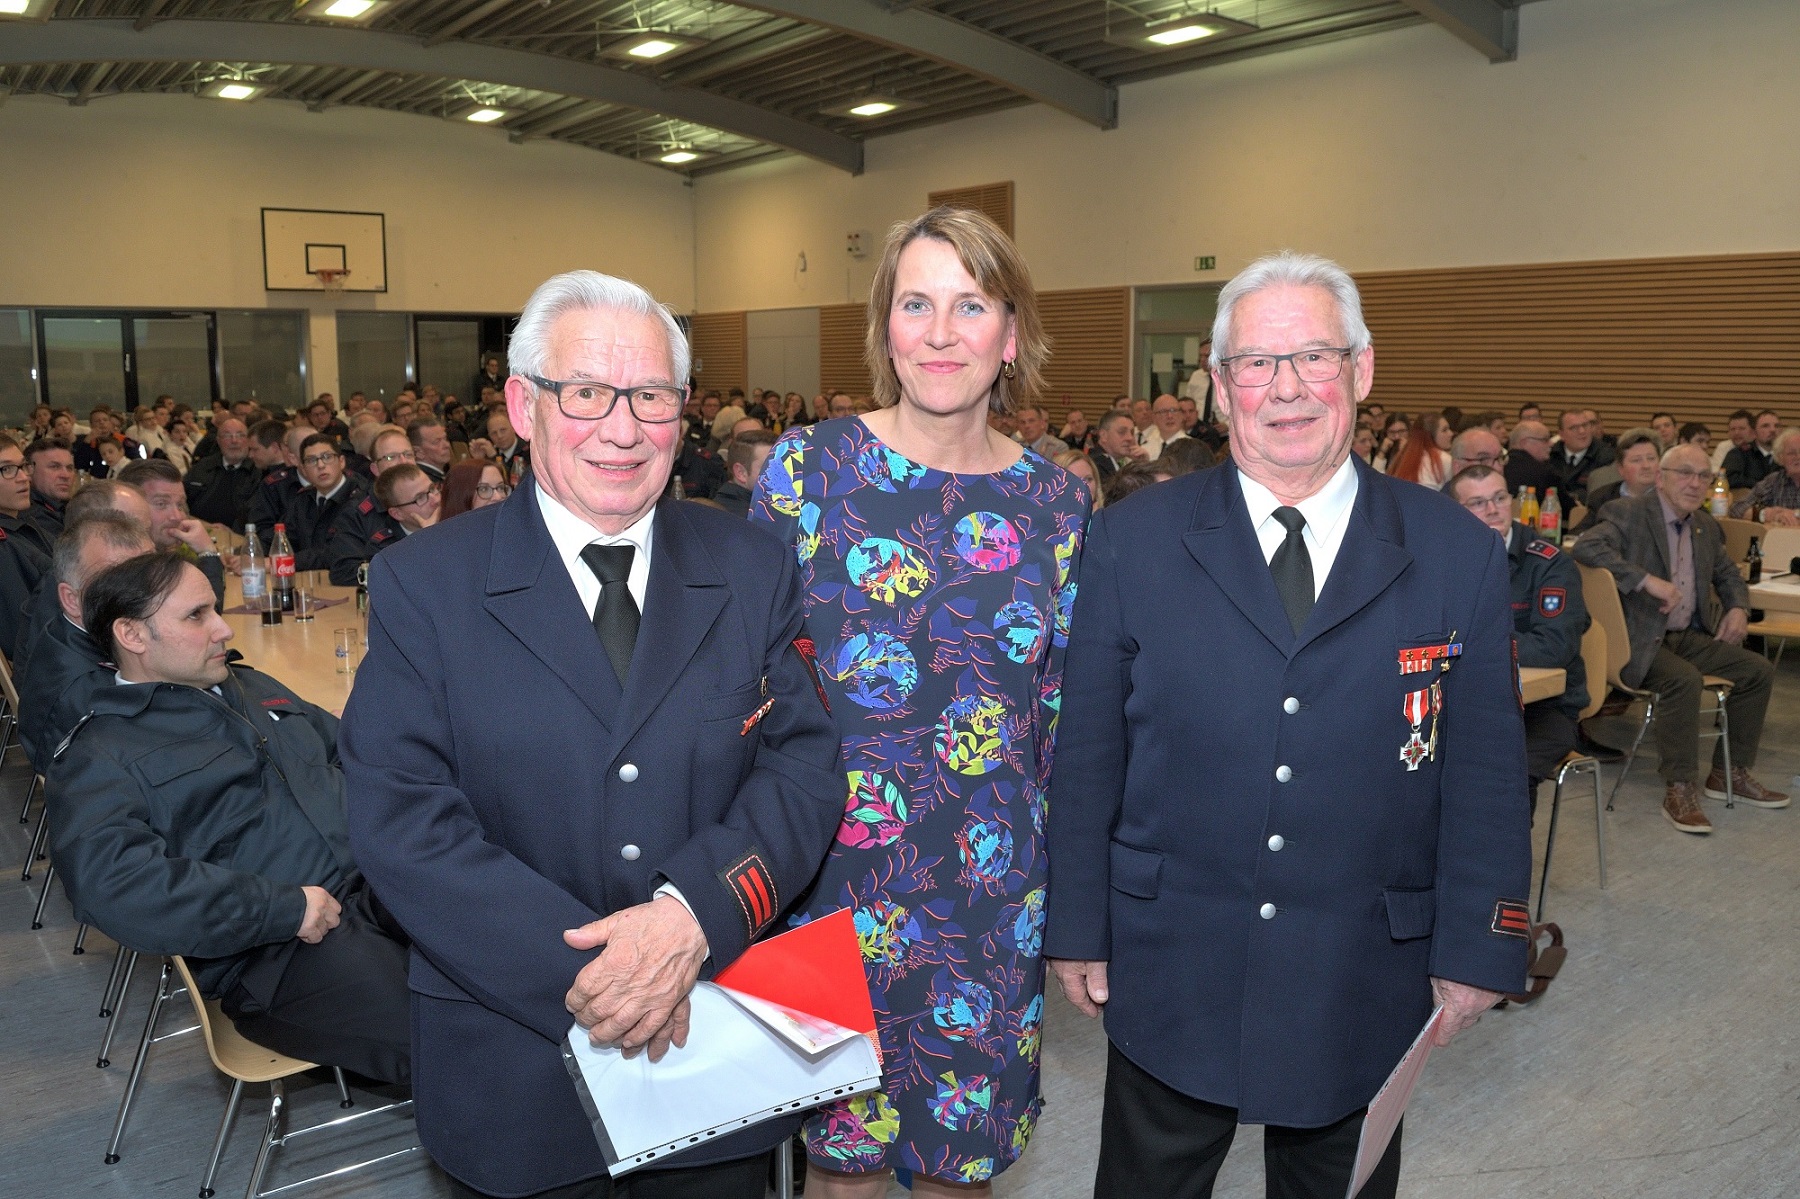 Jeweils 60 Jahre Mitglied der Freiwilligen Feuerwehr: Leo (links) und Hans Peter Geneschen, beide vom Löschzug Dülken, mit Bürgermeisterin Sabine Anemüller (Foto: Stadt Viersen)